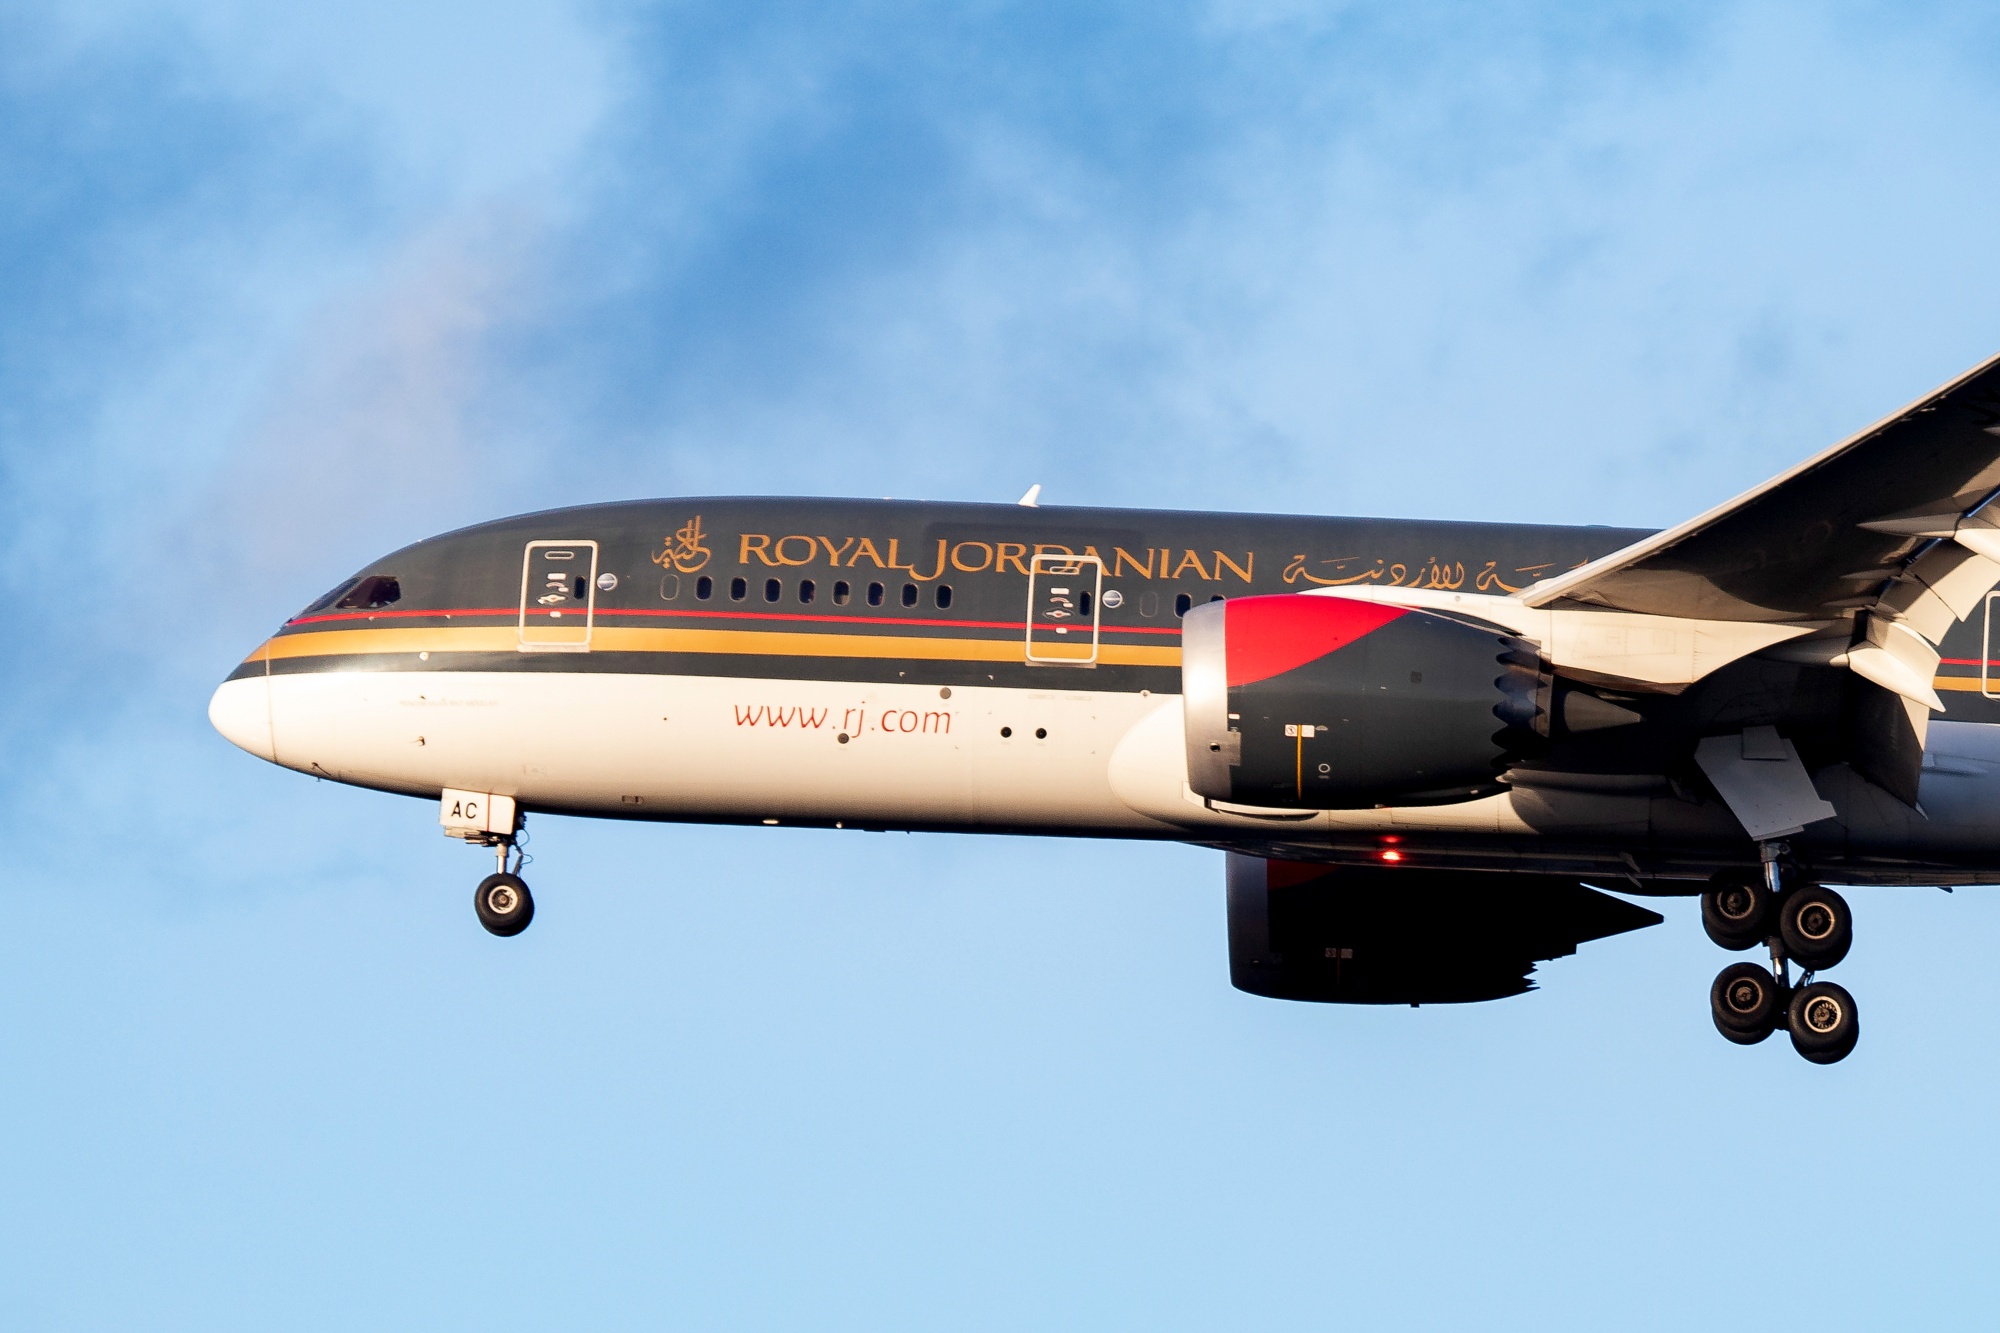 Royal Jordanian Suspends Rome Flights Over Concerns - Bloomberg